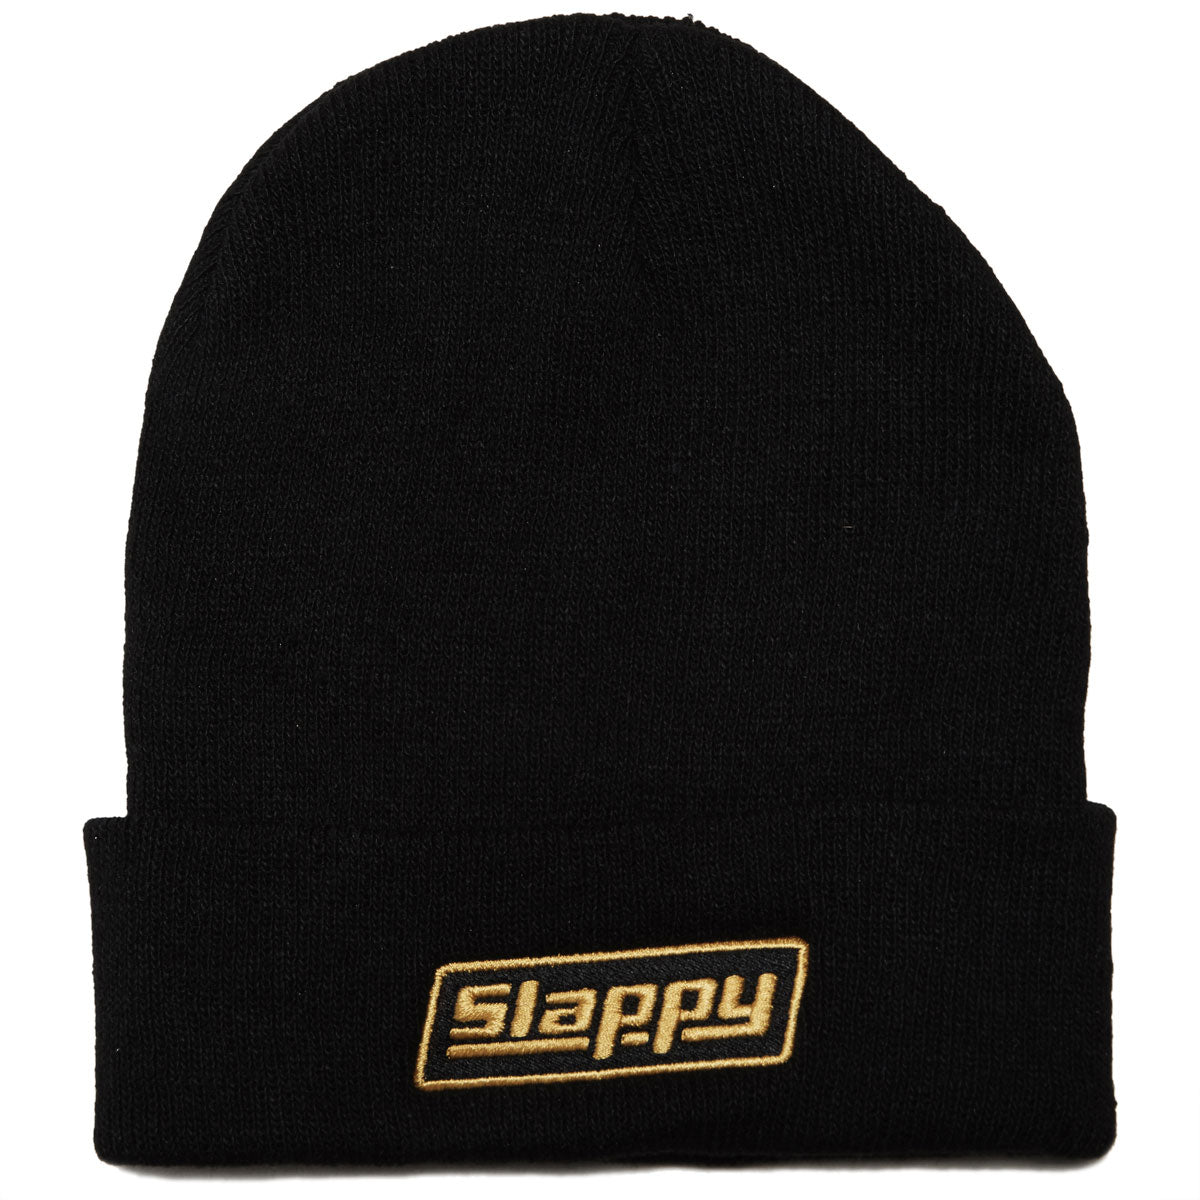 Slappy Og Logo Roll Up Beanie - Black image 1